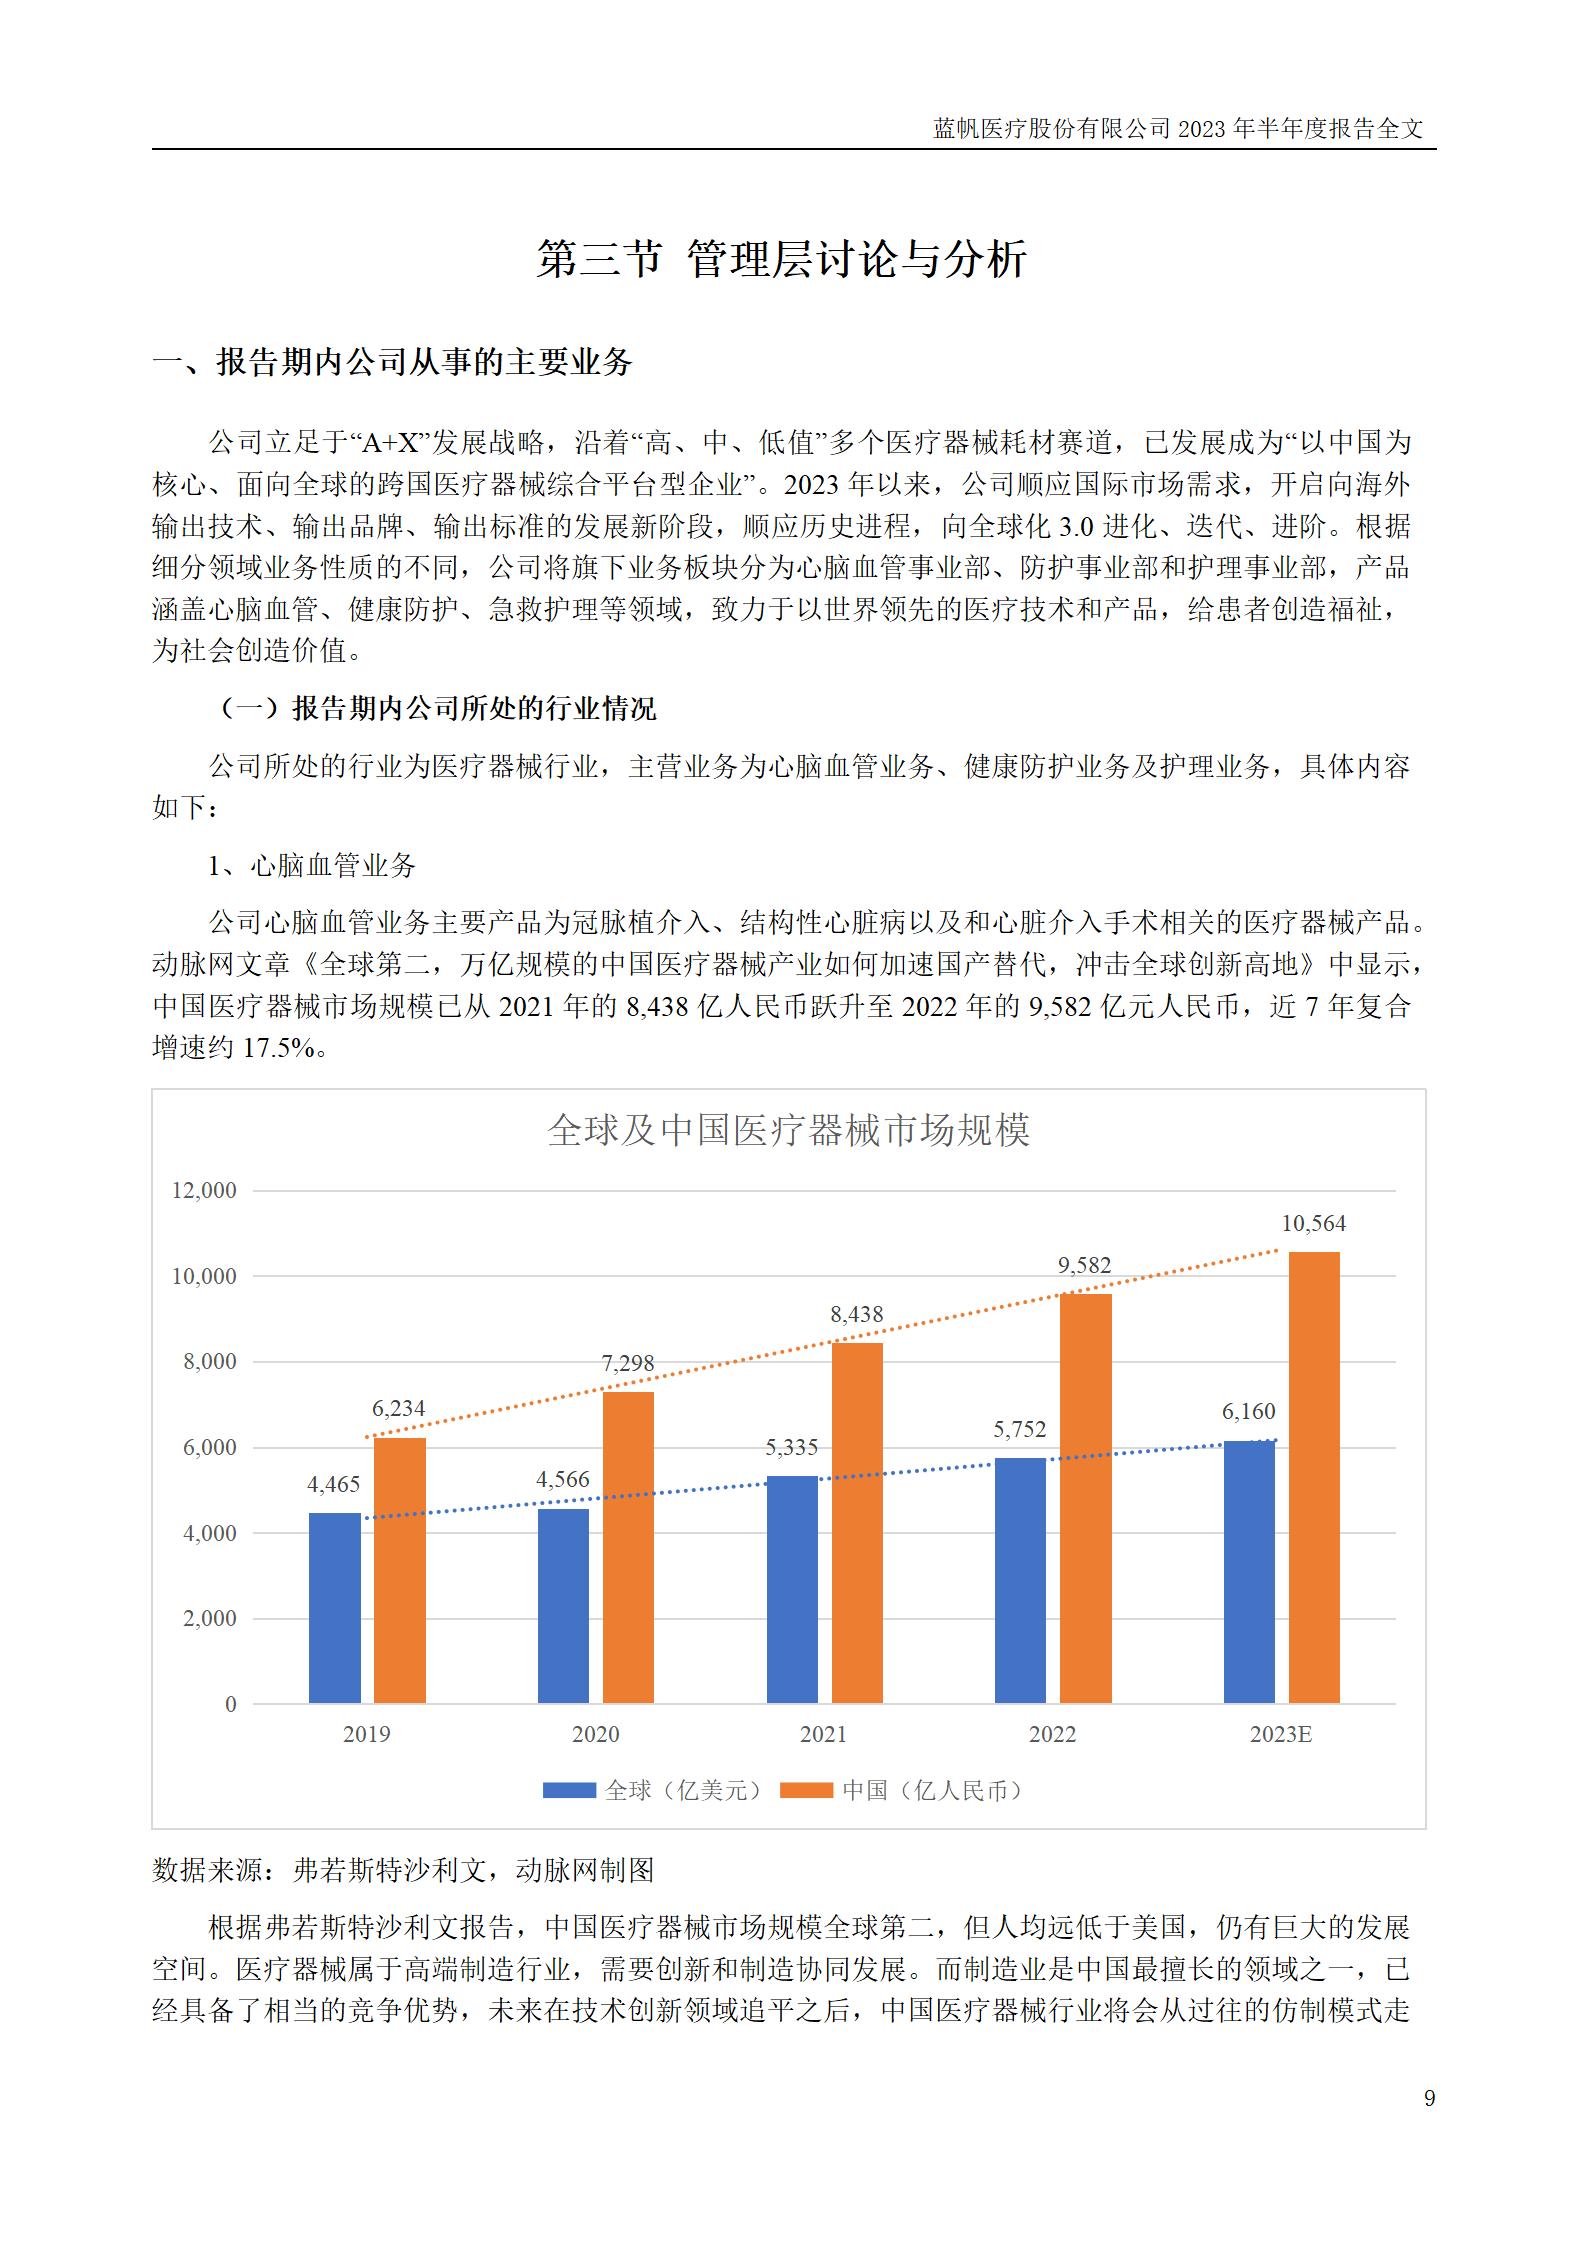 蓝帆医疗股份有限公司2023年半年度报告_09